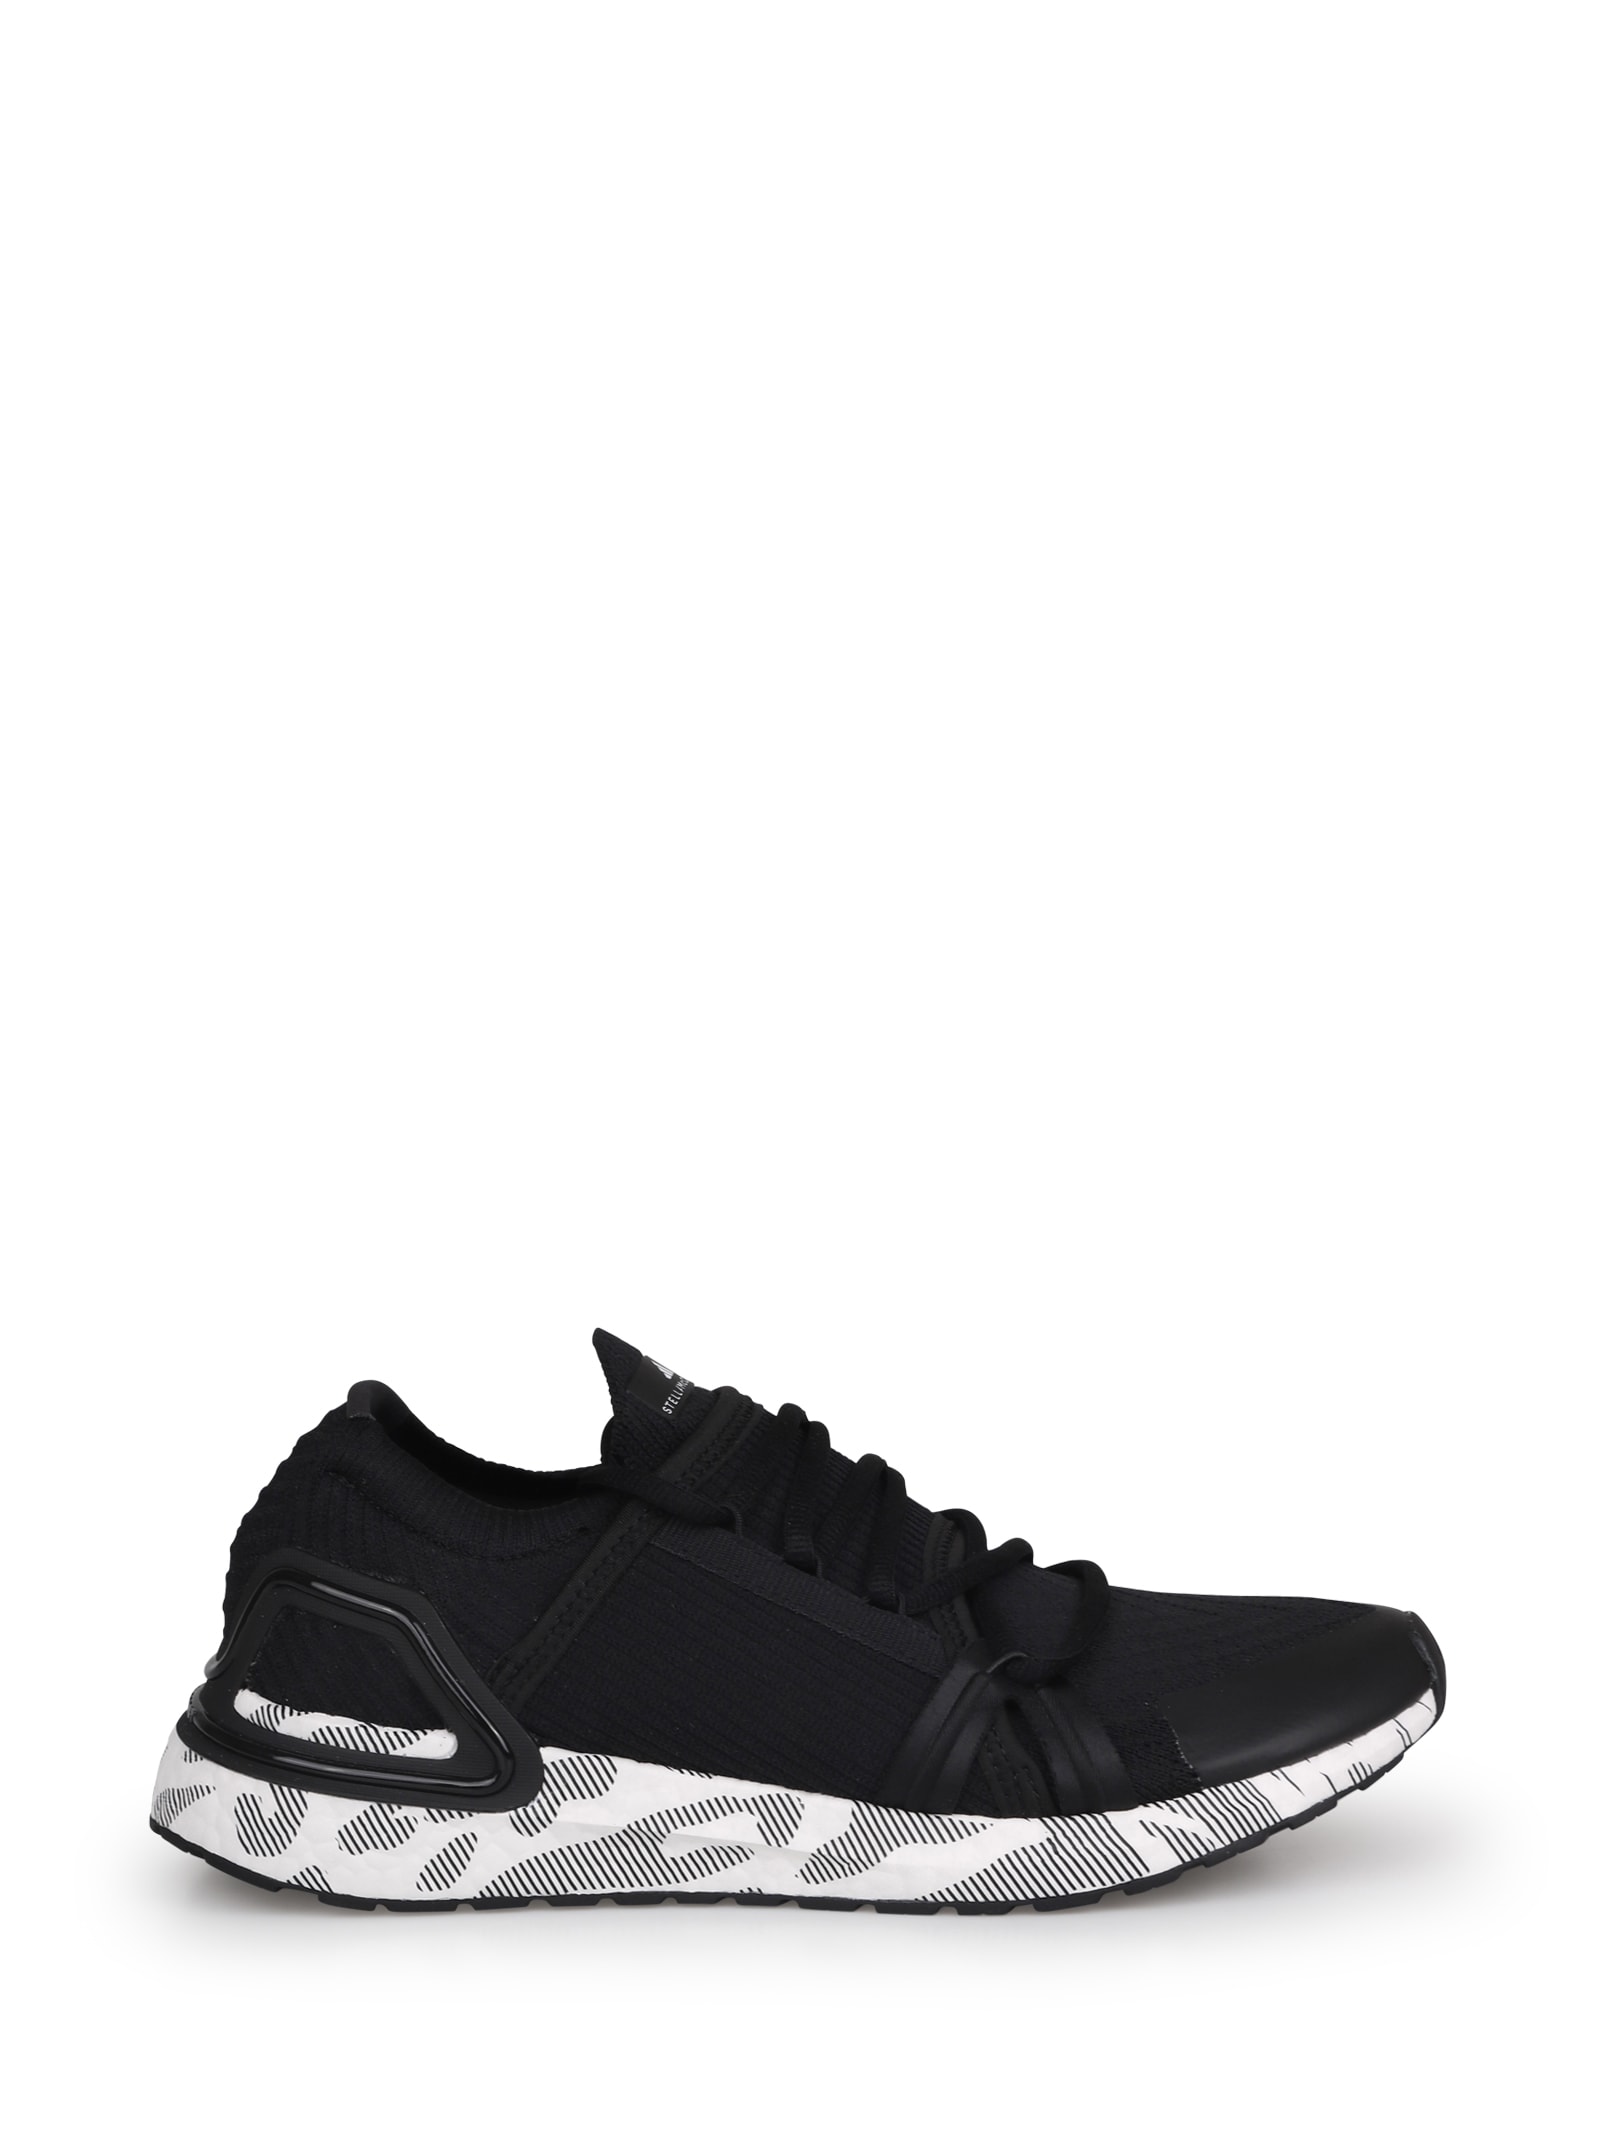 Shop Adidas By Stella Mccartney Ultraboost 20 Low-top Sneakers In Cblack/ftwwht/cblack